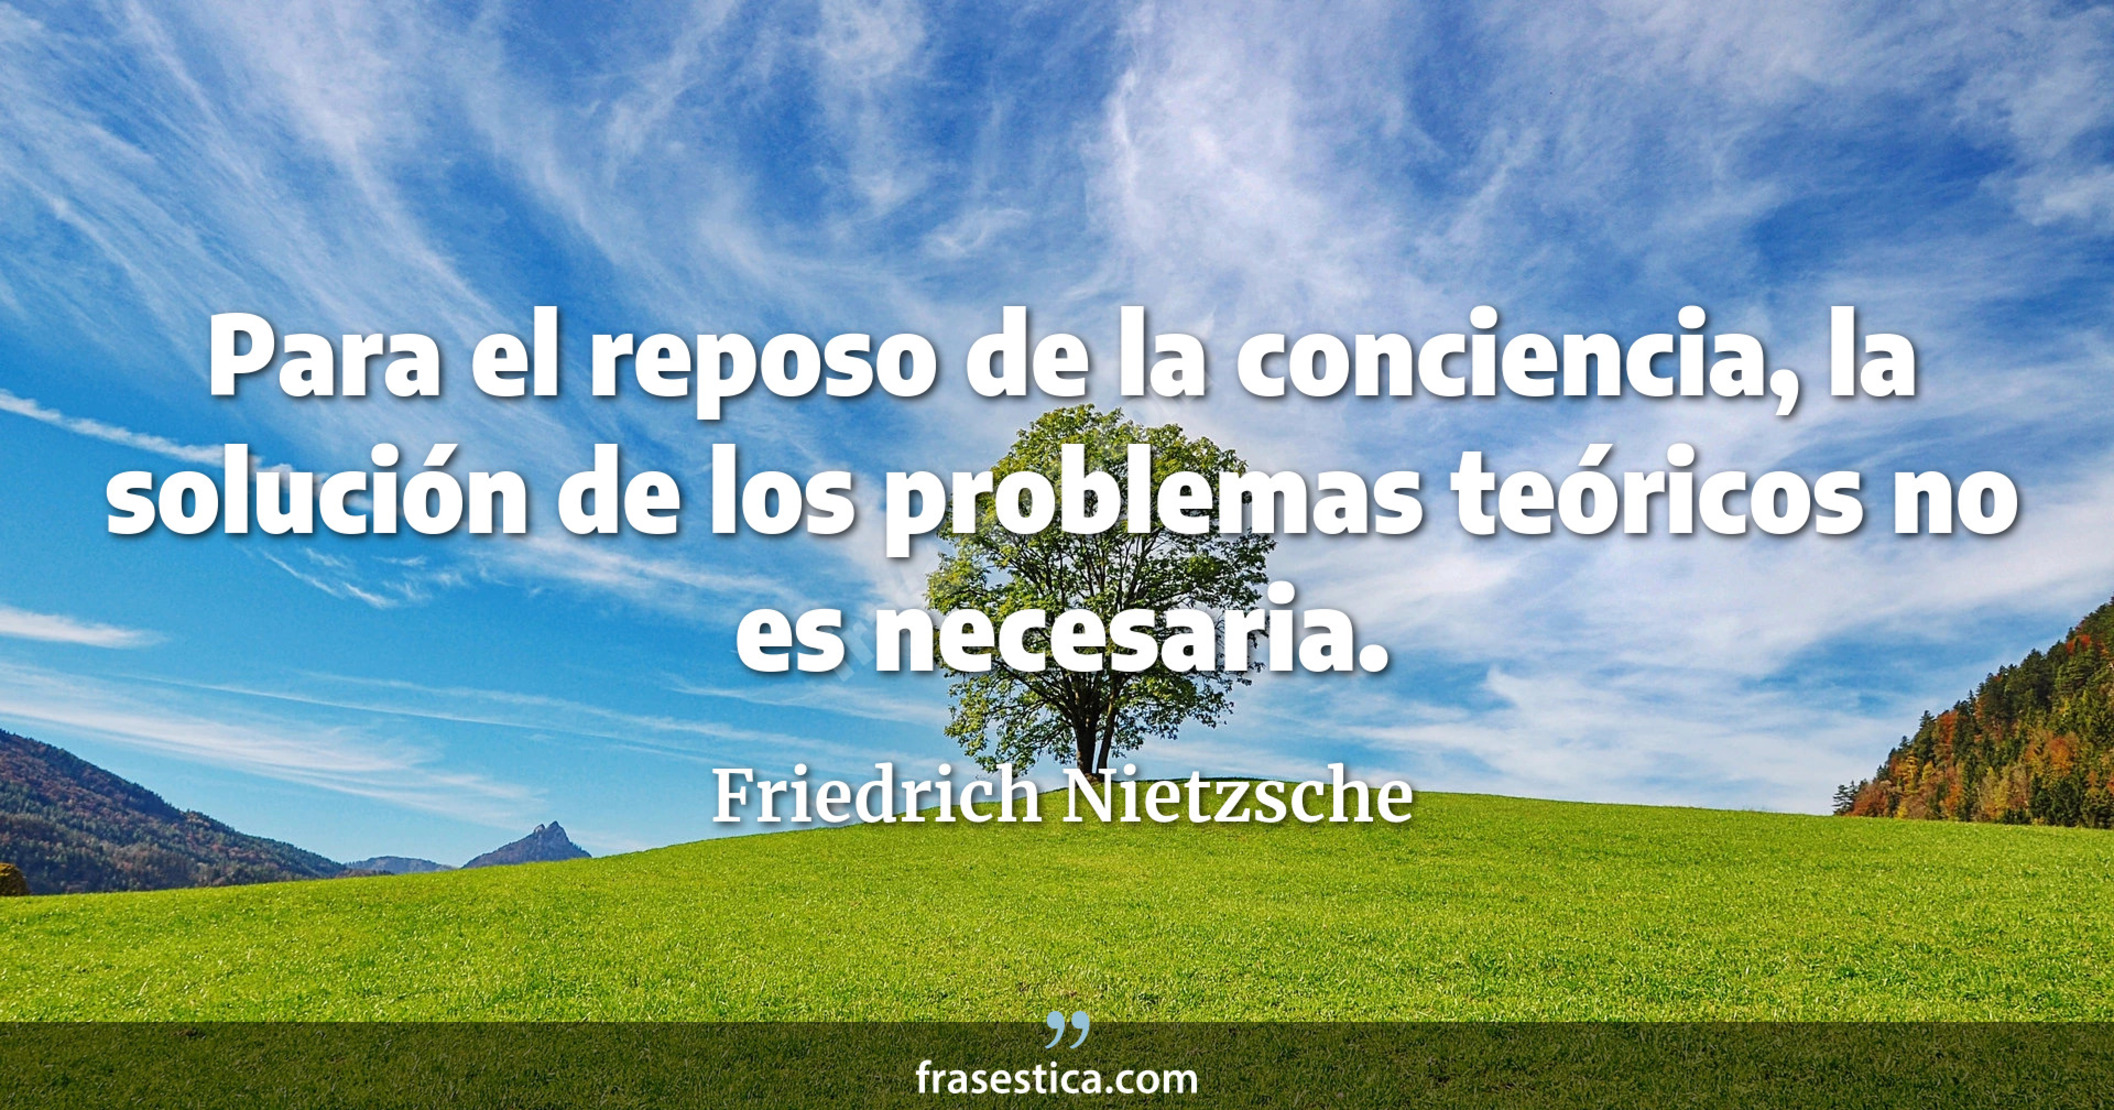 Para el reposo de la conciencia, la solución de los problemas teóricos no es necesaria. - Friedrich Nietzsche